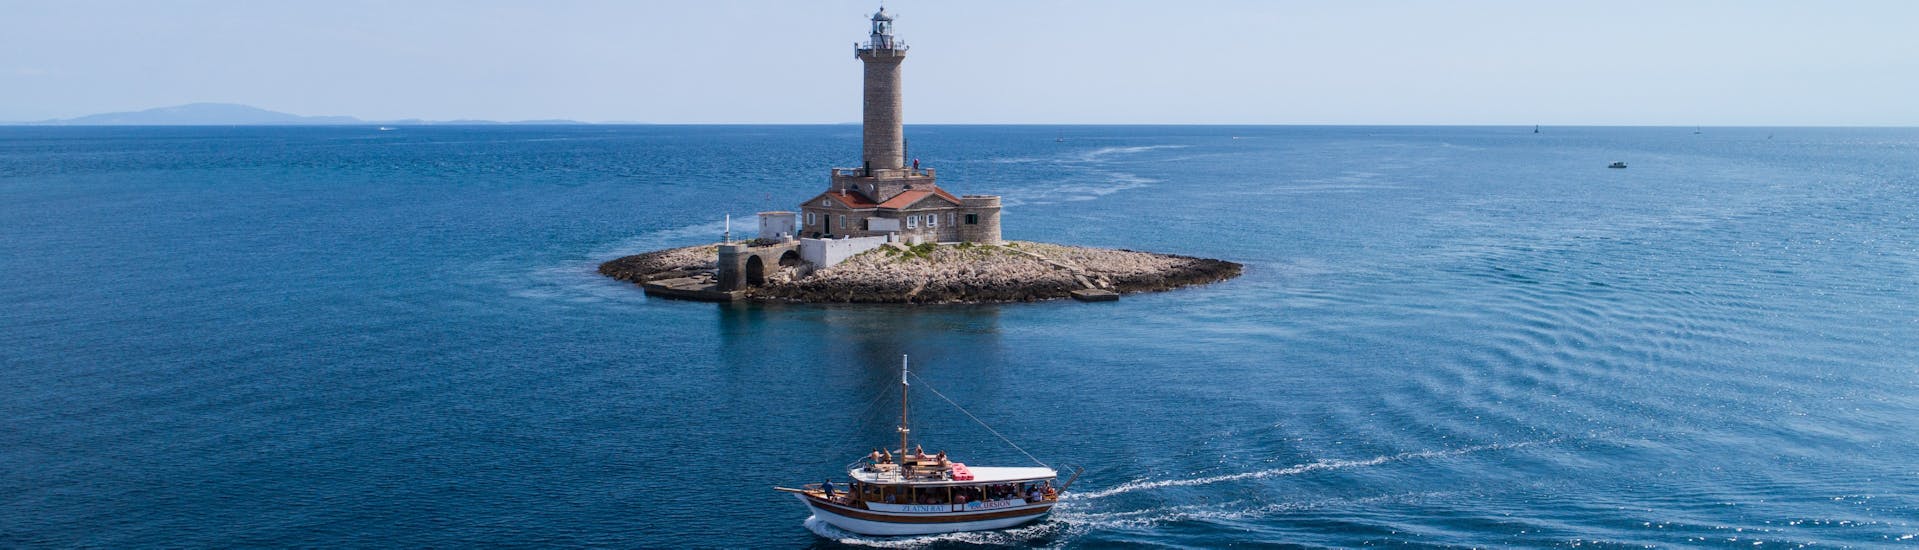 Photo du bateau devant le phare de Porer, pendant la balade en bateau autour de l'archipel de Medulin avec Déjeuner organisée par Tajana & Zlatni Rat Excursions Medulin.